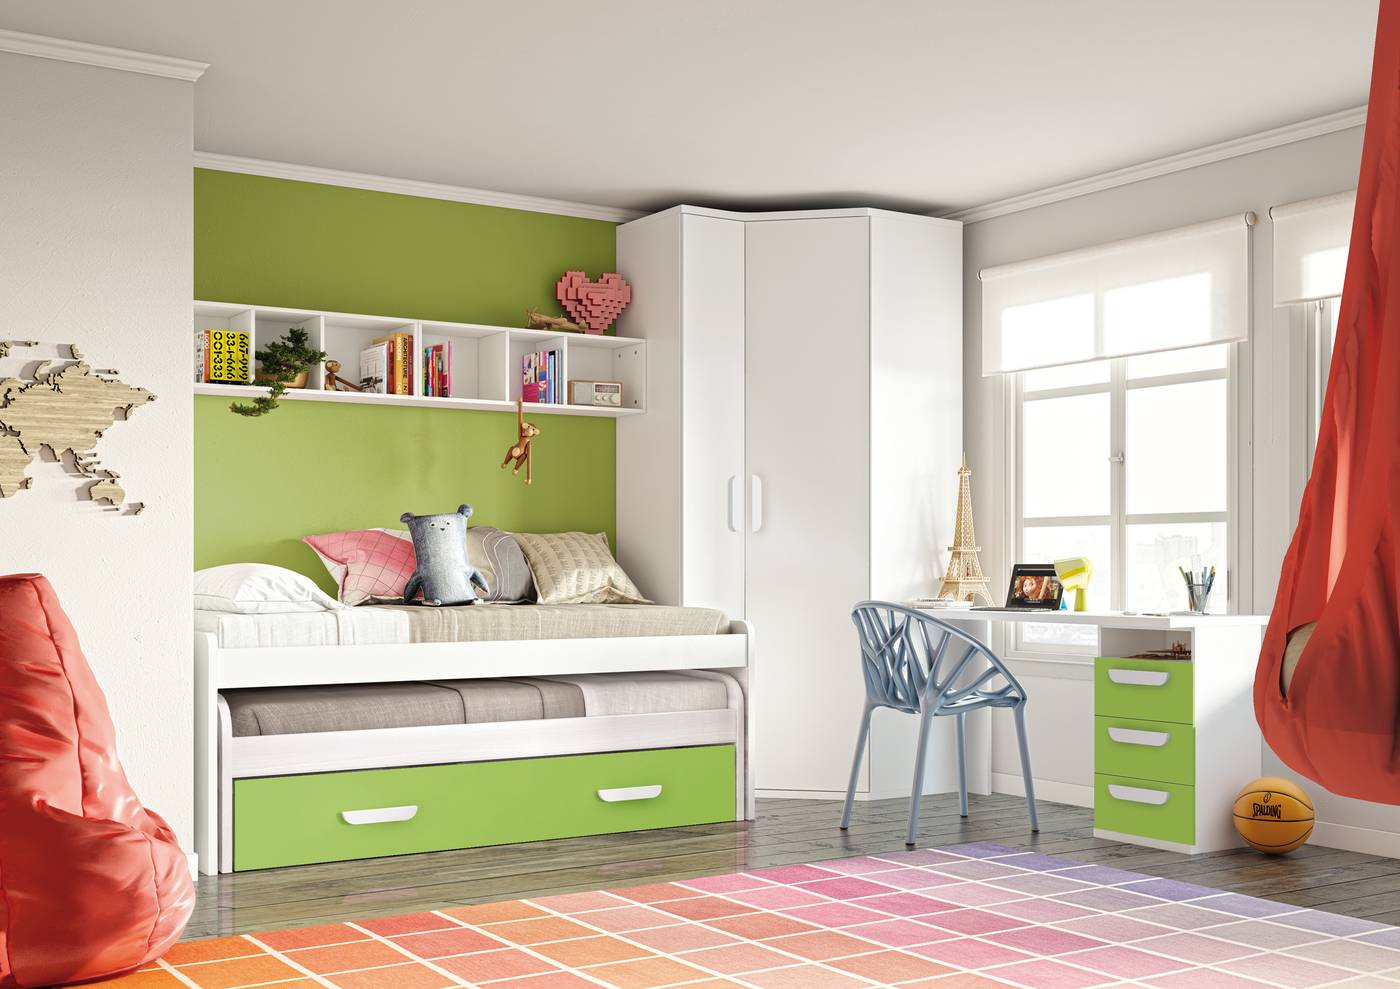 Habitación juvenil formada por cama compacto, 2 estanterías pared, mesa y cajonera.